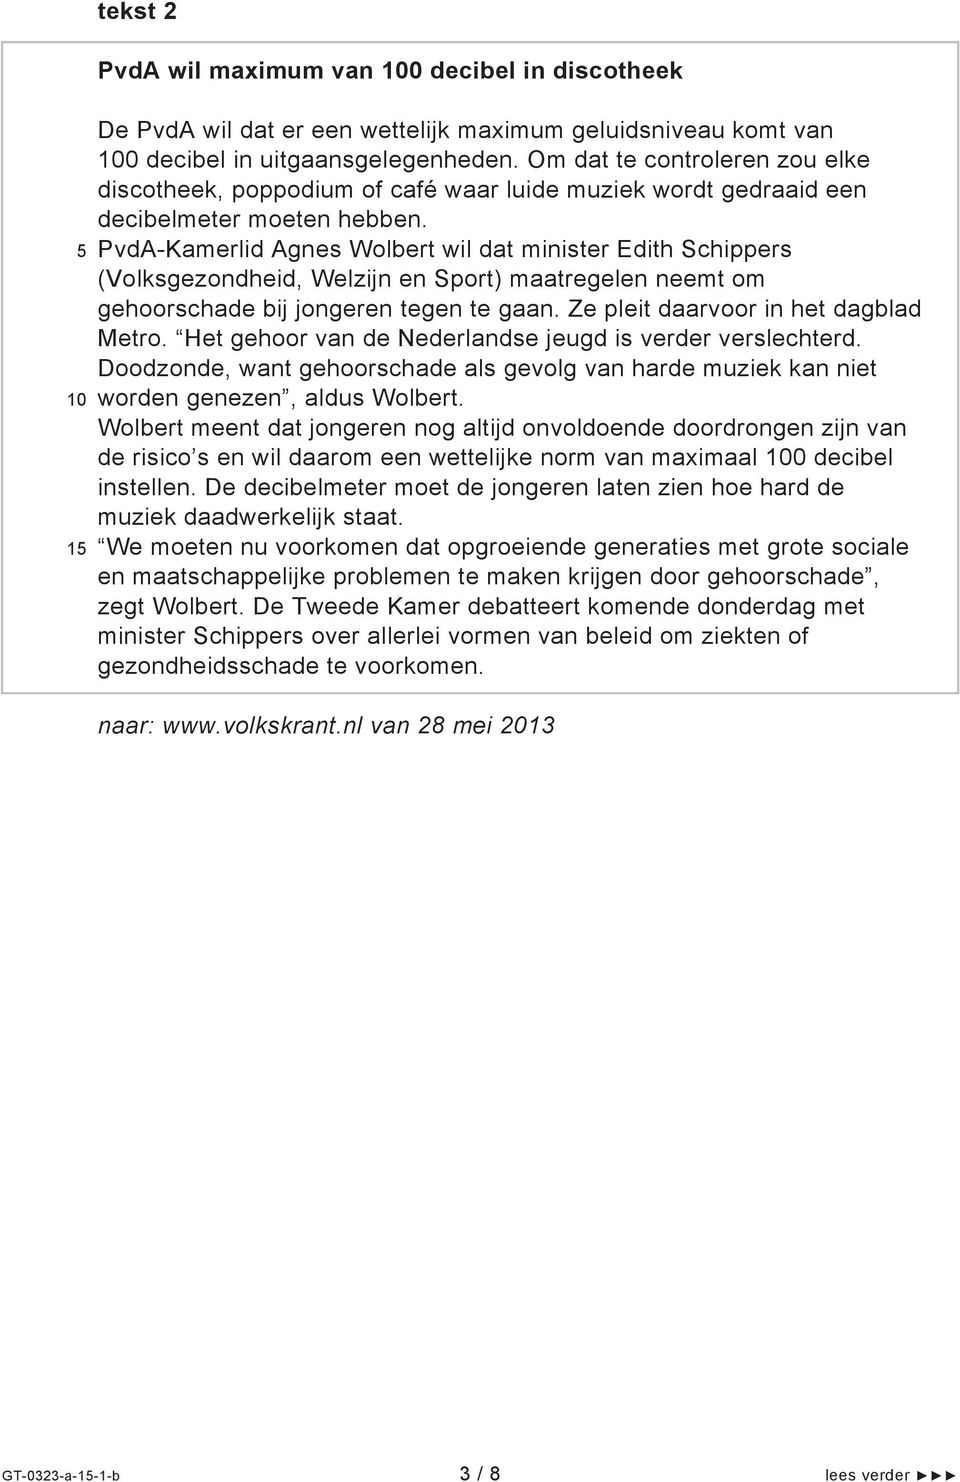 PvdA-Kamerlid Agnes Wolbert wil dat minister Edith Schippers (Volksgezondheid, Welzijn en Sport) maatregelen neemt om gehoorschade bij jongeren tegen te gaan. Ze pleit daarvoor in het dagblad Metro.